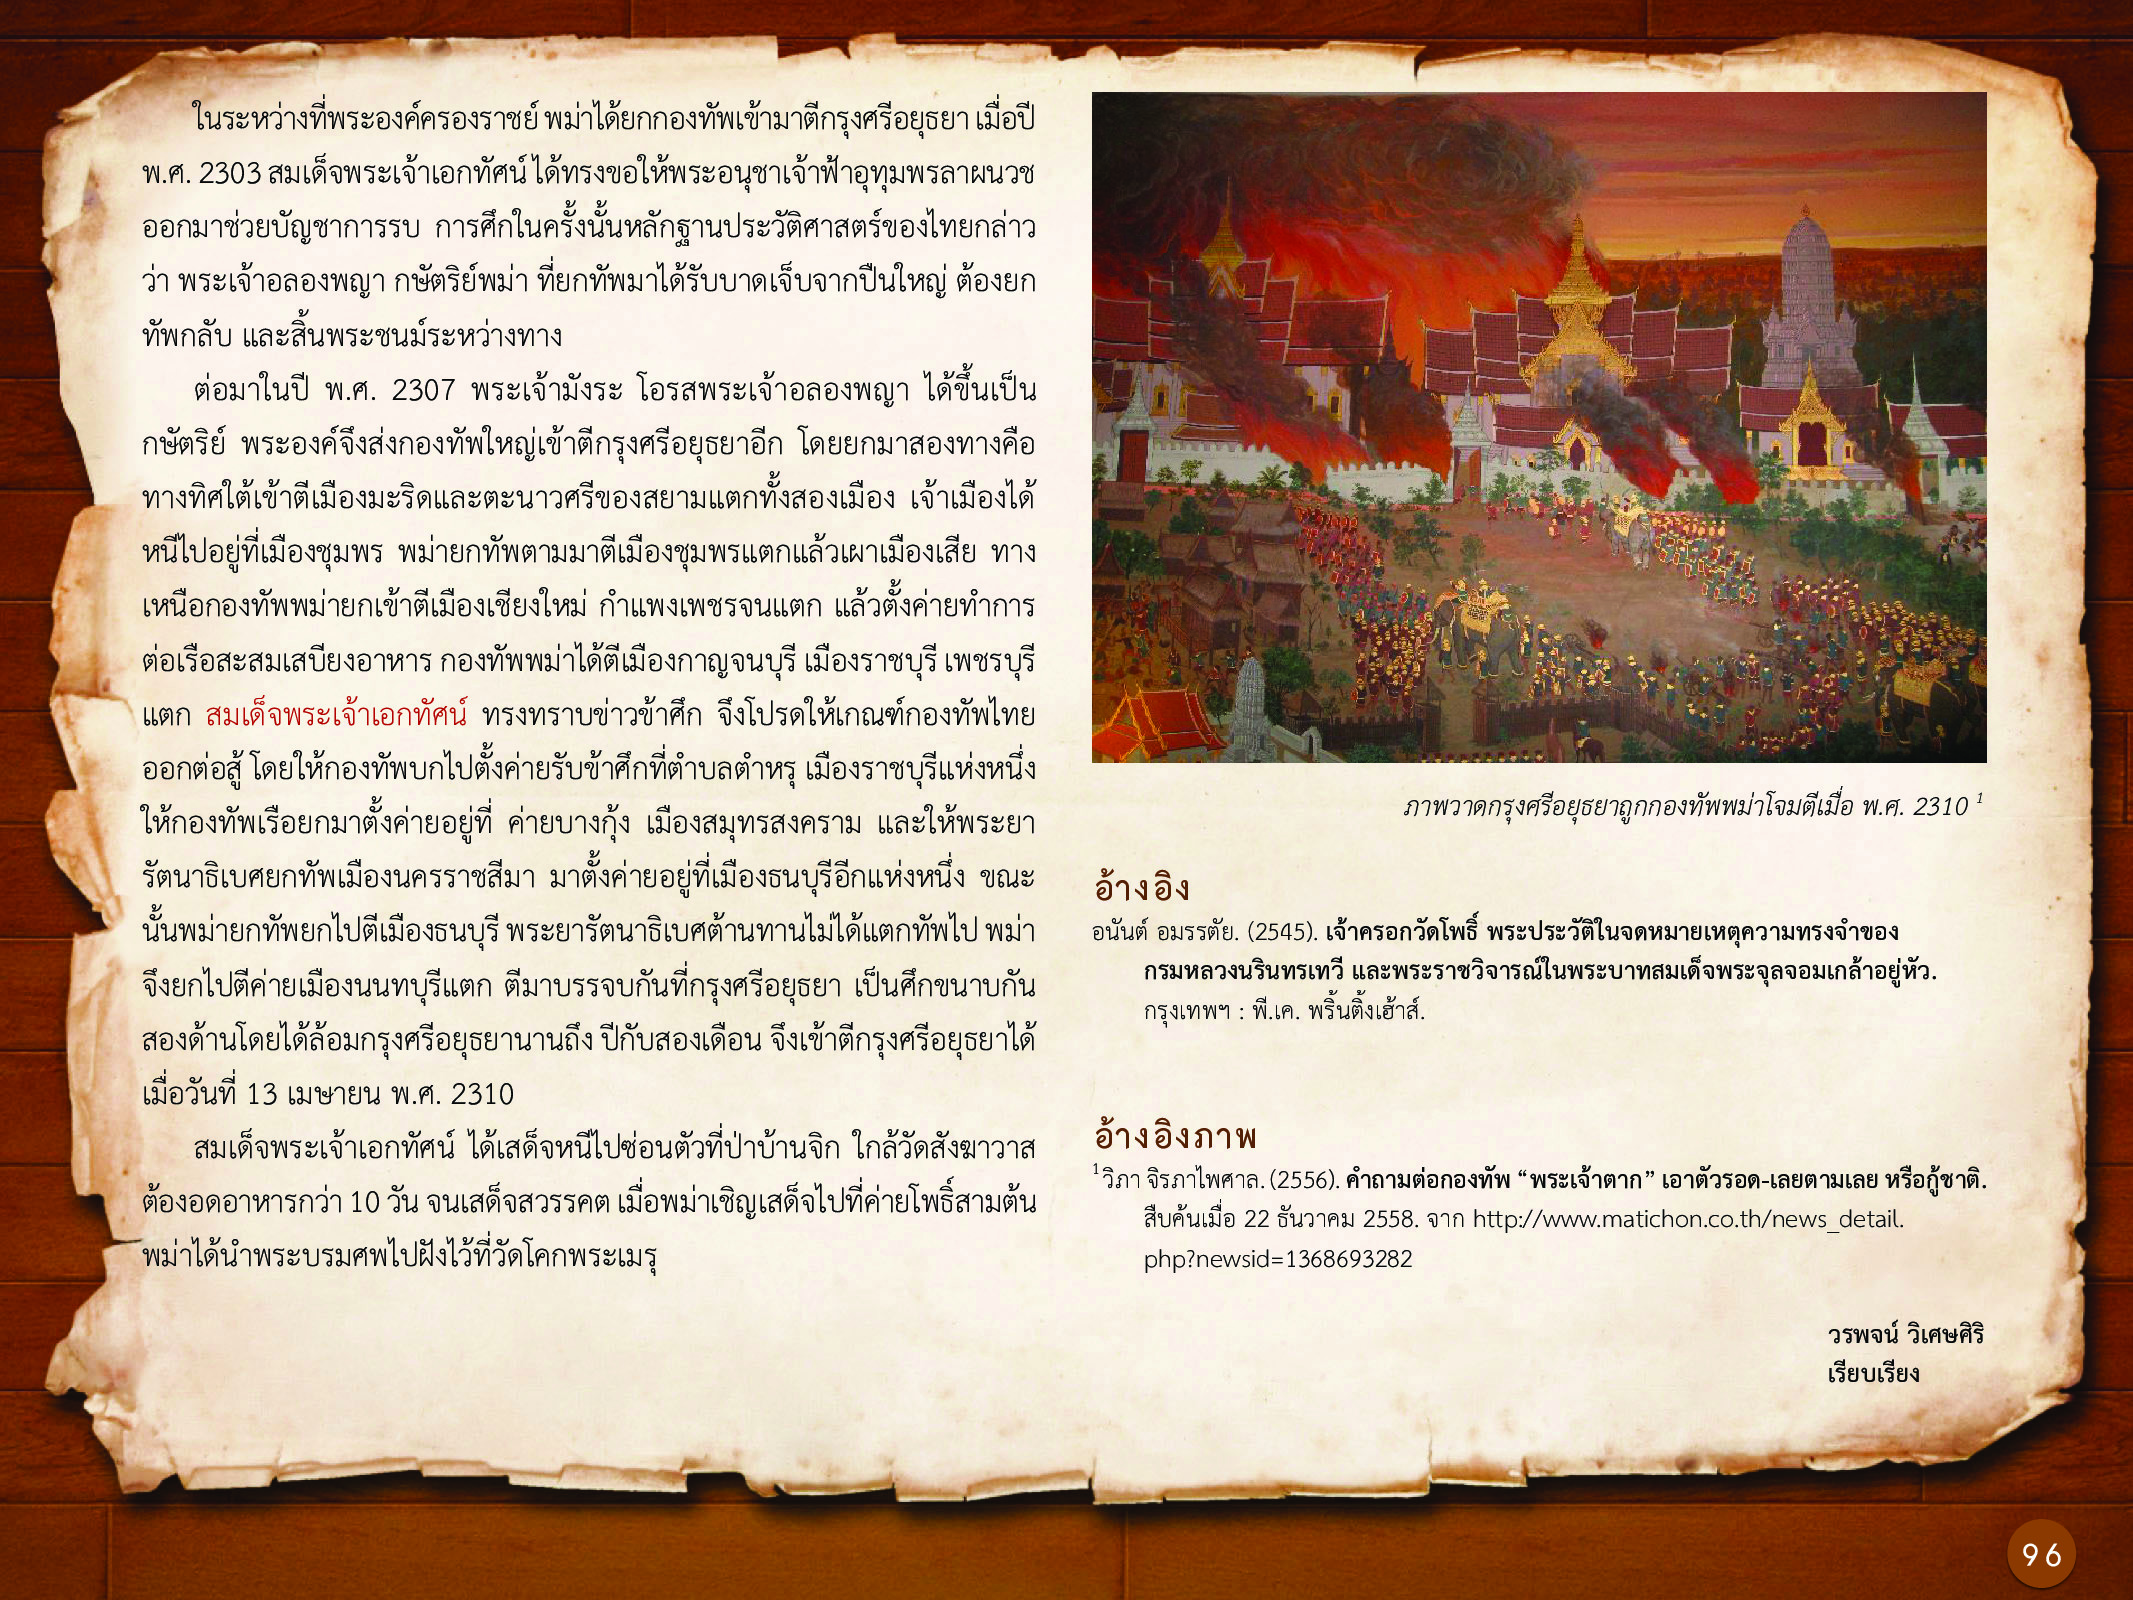 ประวัติศาสตร์กรุงธนบุรี ./images/history_dhonburi/96.jpg